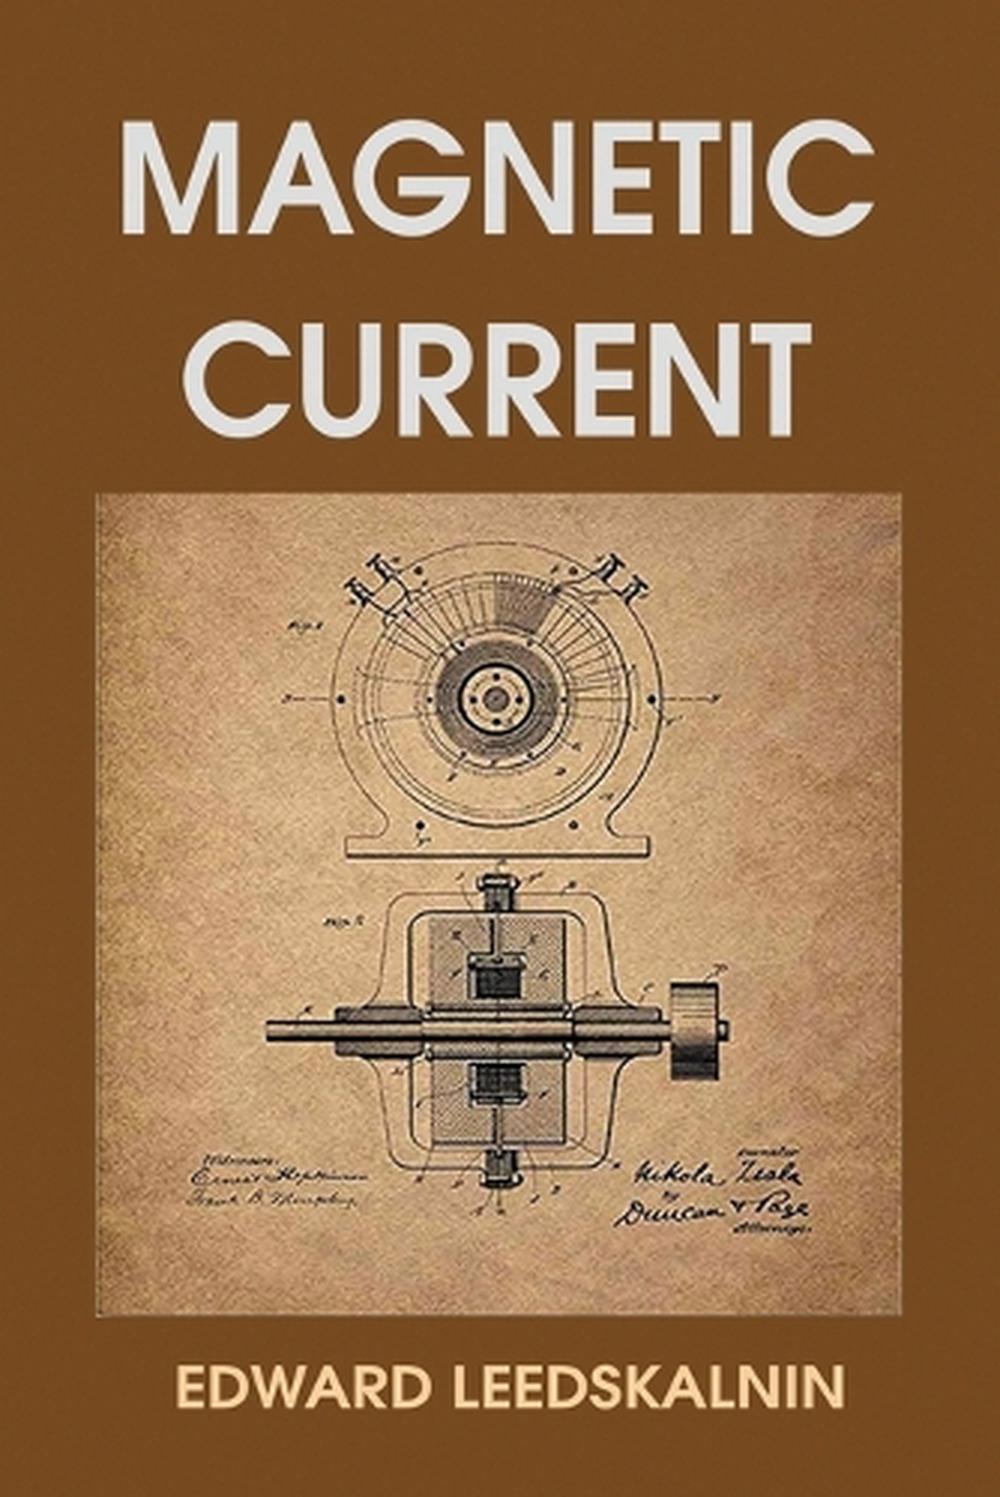 Magnetic Current by Edward Leedskalnin